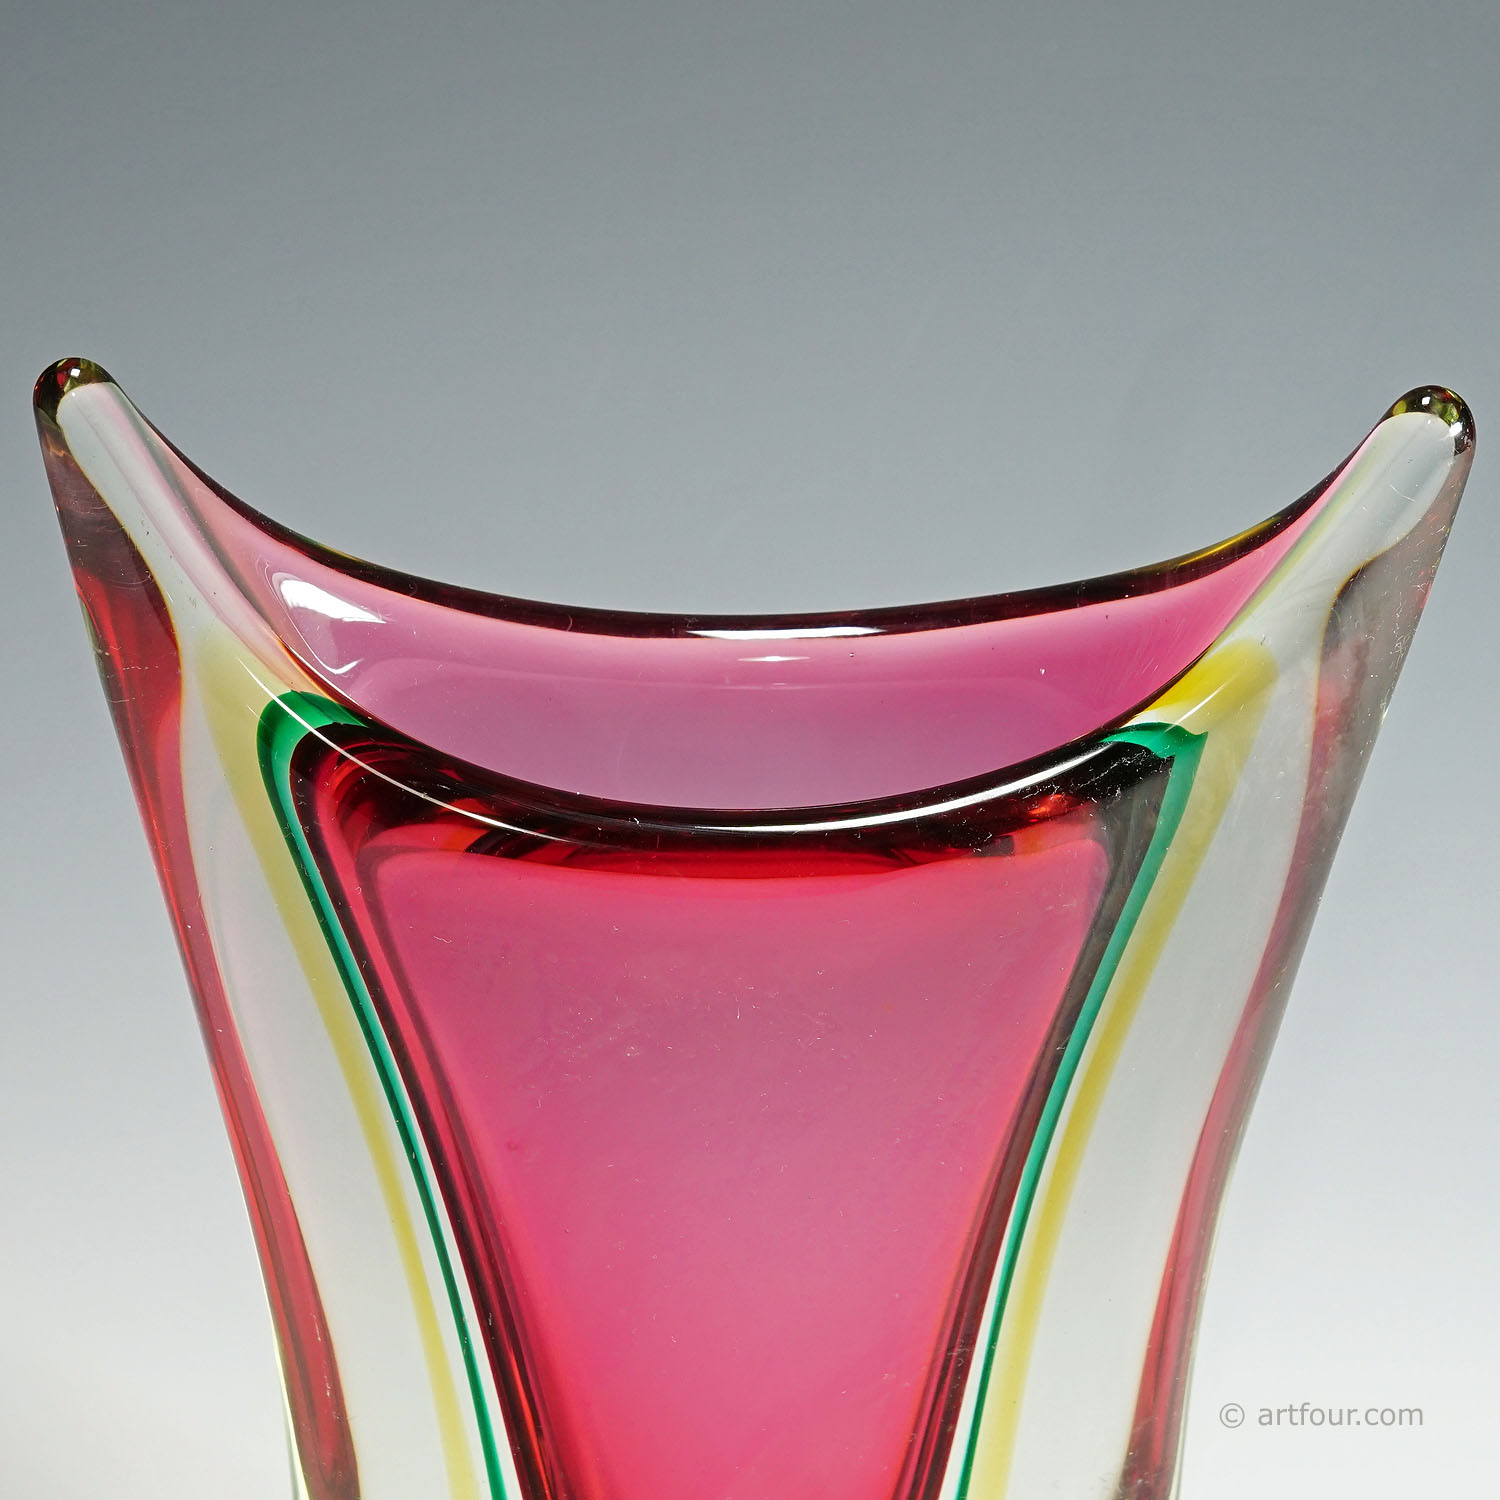 Midcentury Murano Sommerso Art Glass Vase by C.O.V.E.M 1960s